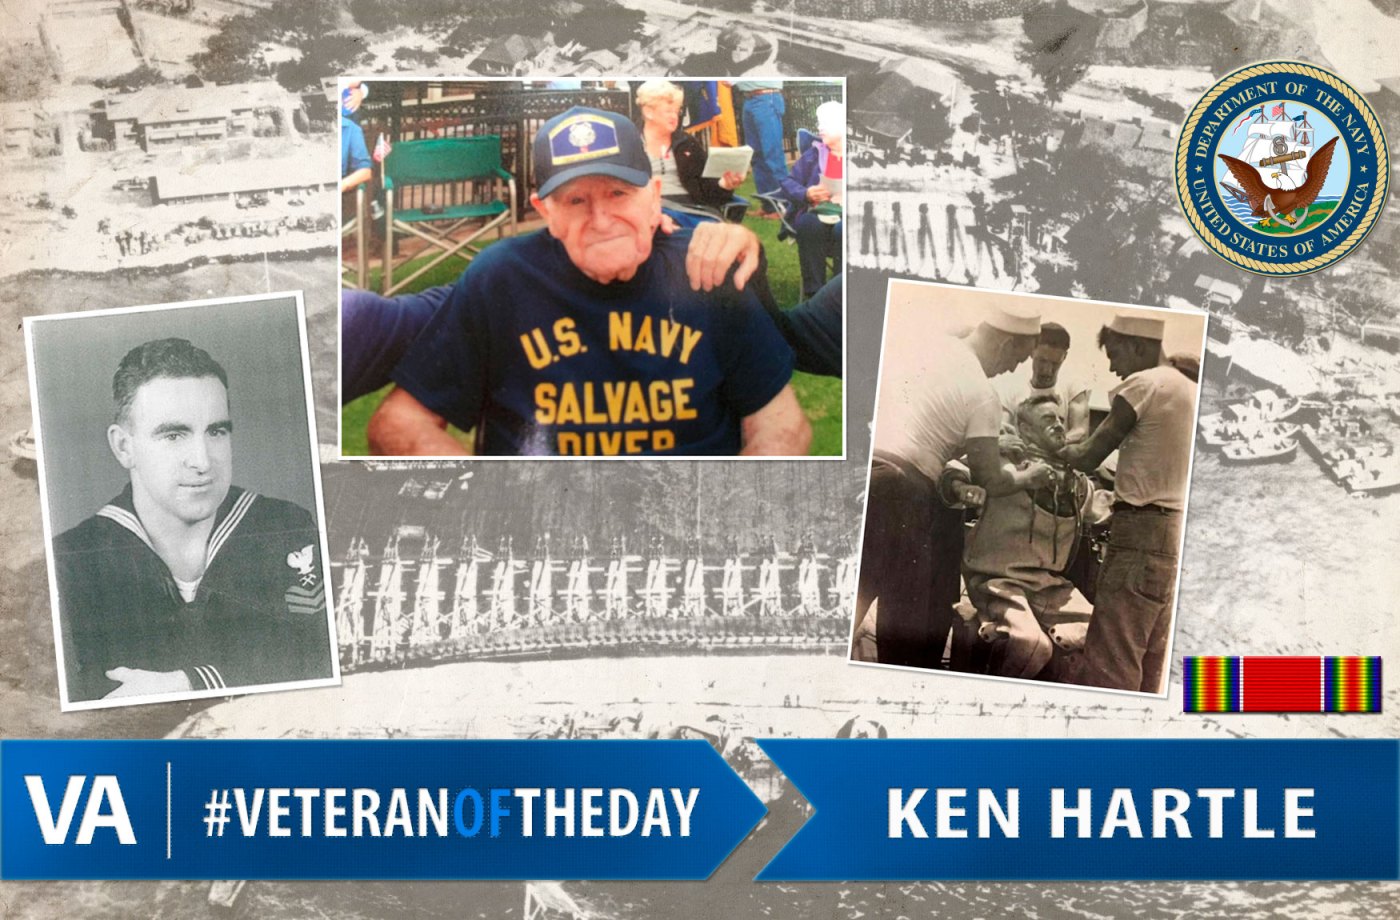 Ken Hartle - Veteran of the Day